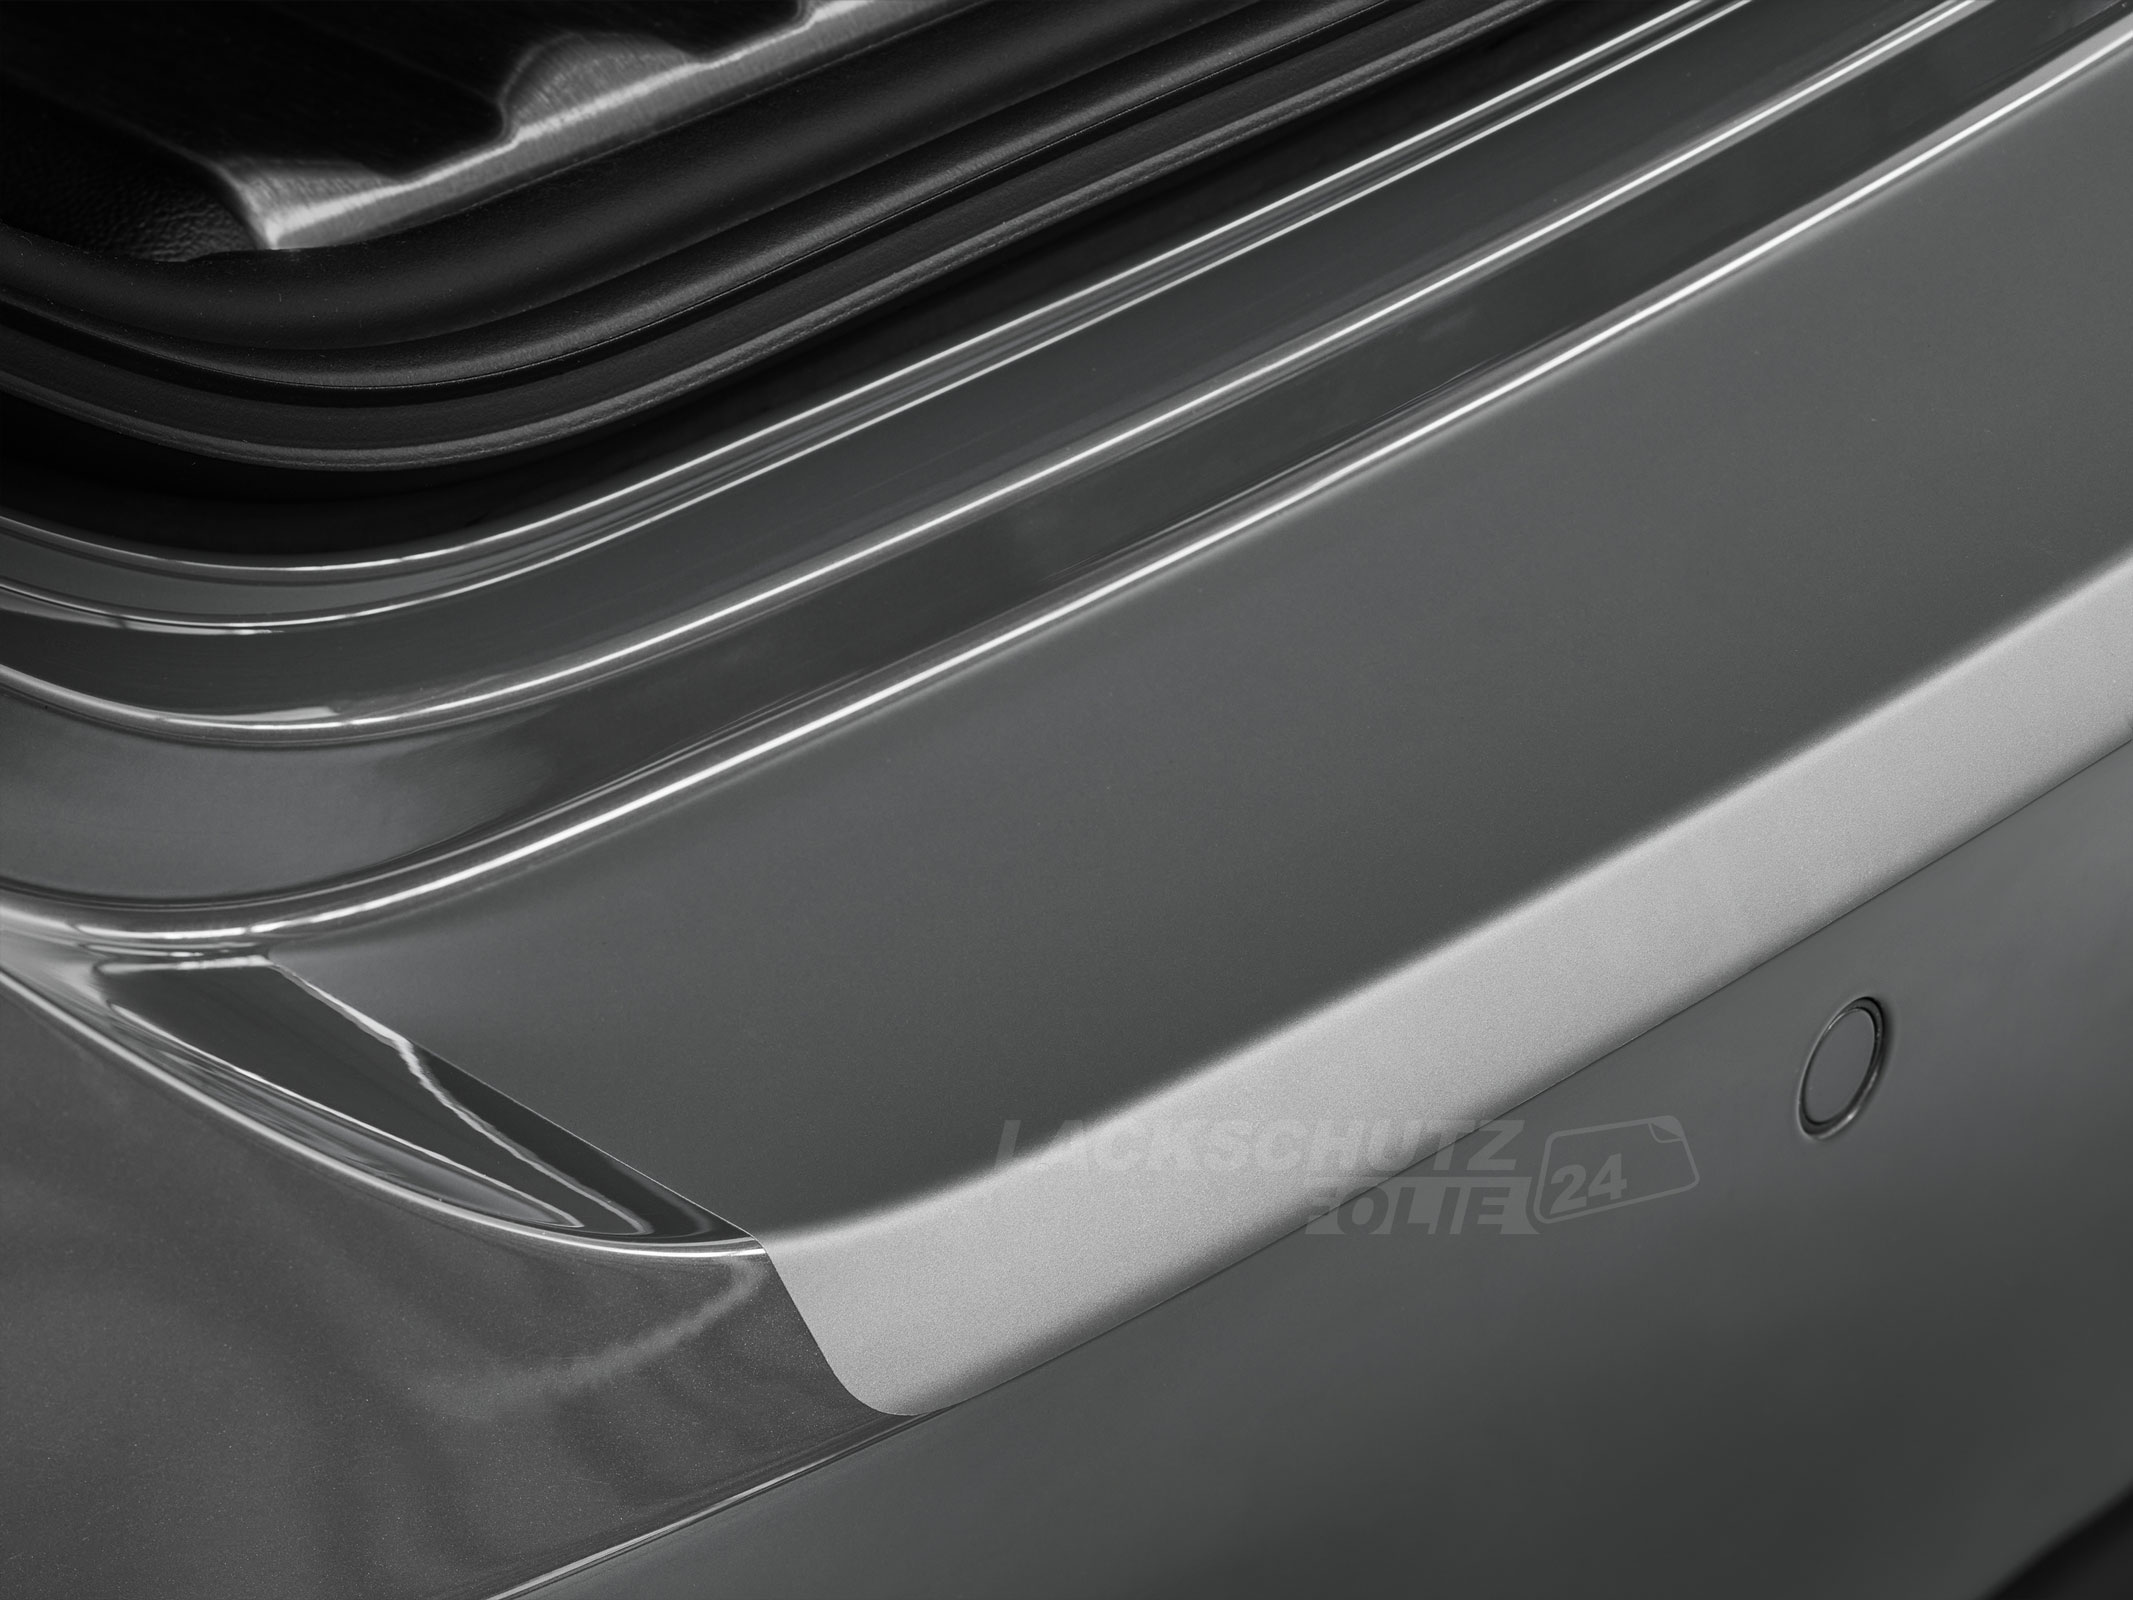 Ladekantenschutzfolie - Transparent Glatt MATT 110 µm stark  für Mazda 3 Stufenheck Typ BL, BJ 2009-2013